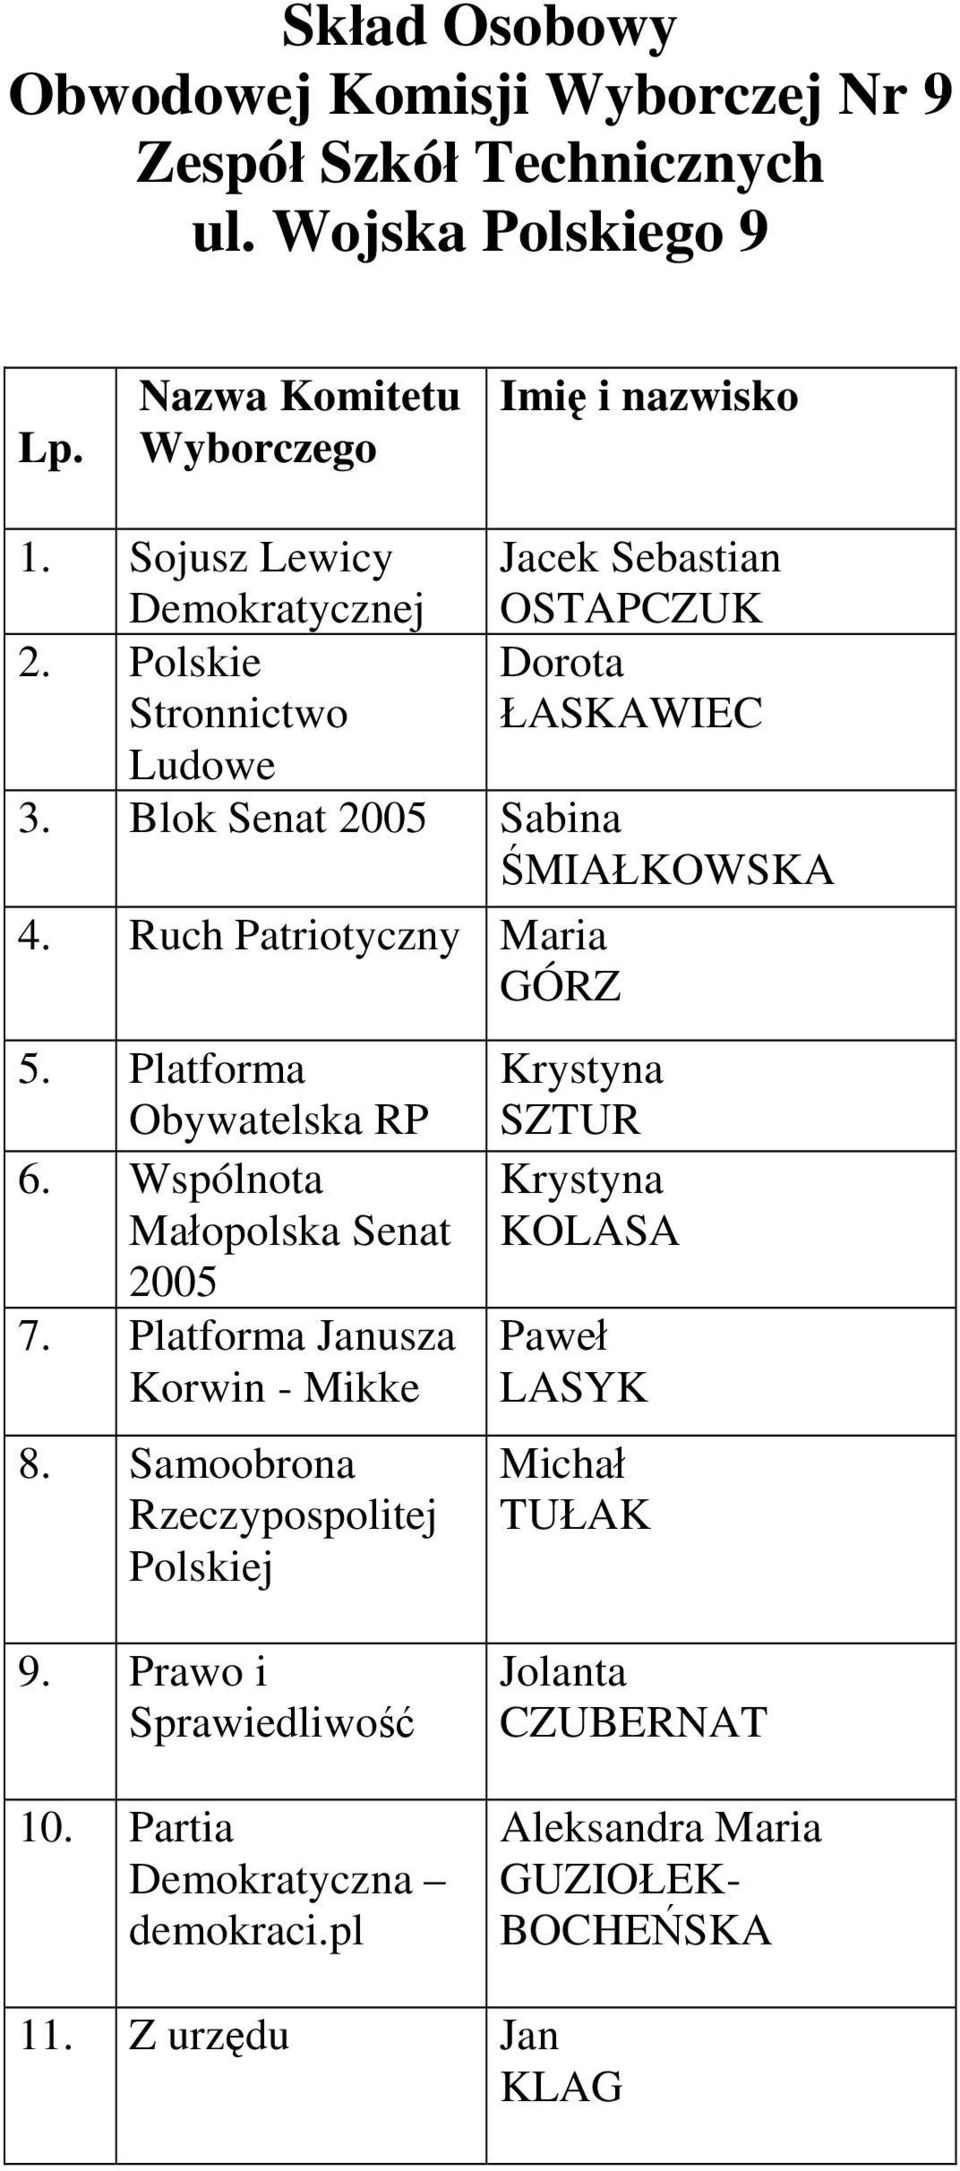 Ruch Patriotyczny Maria GÓRZ 5. Platforma 6. Wspólnota 7. Platforma Janusza Korwin - Mikke 8.